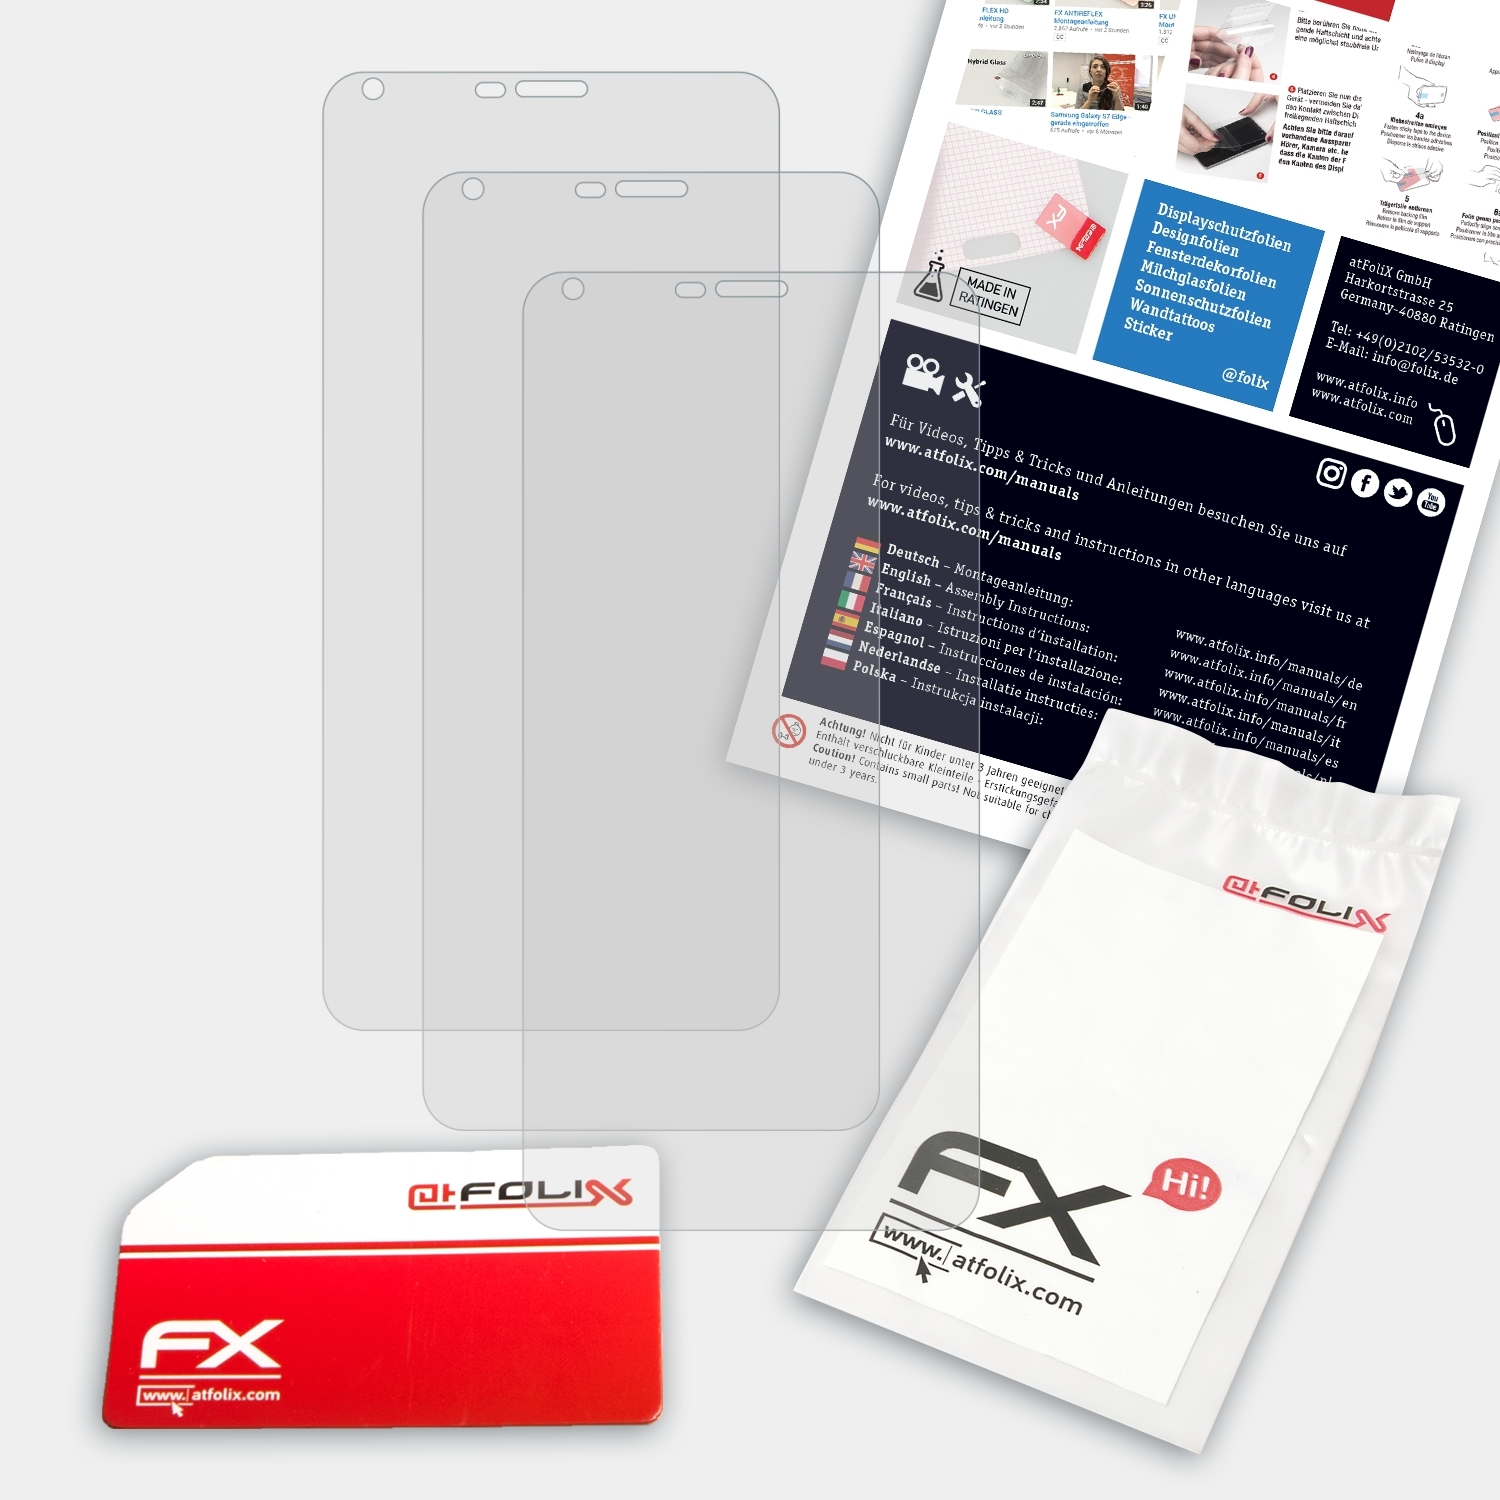 Prestigio FX-Antireflex ATFOLIX S7 LTE) Displayschutz(für Grace 3x